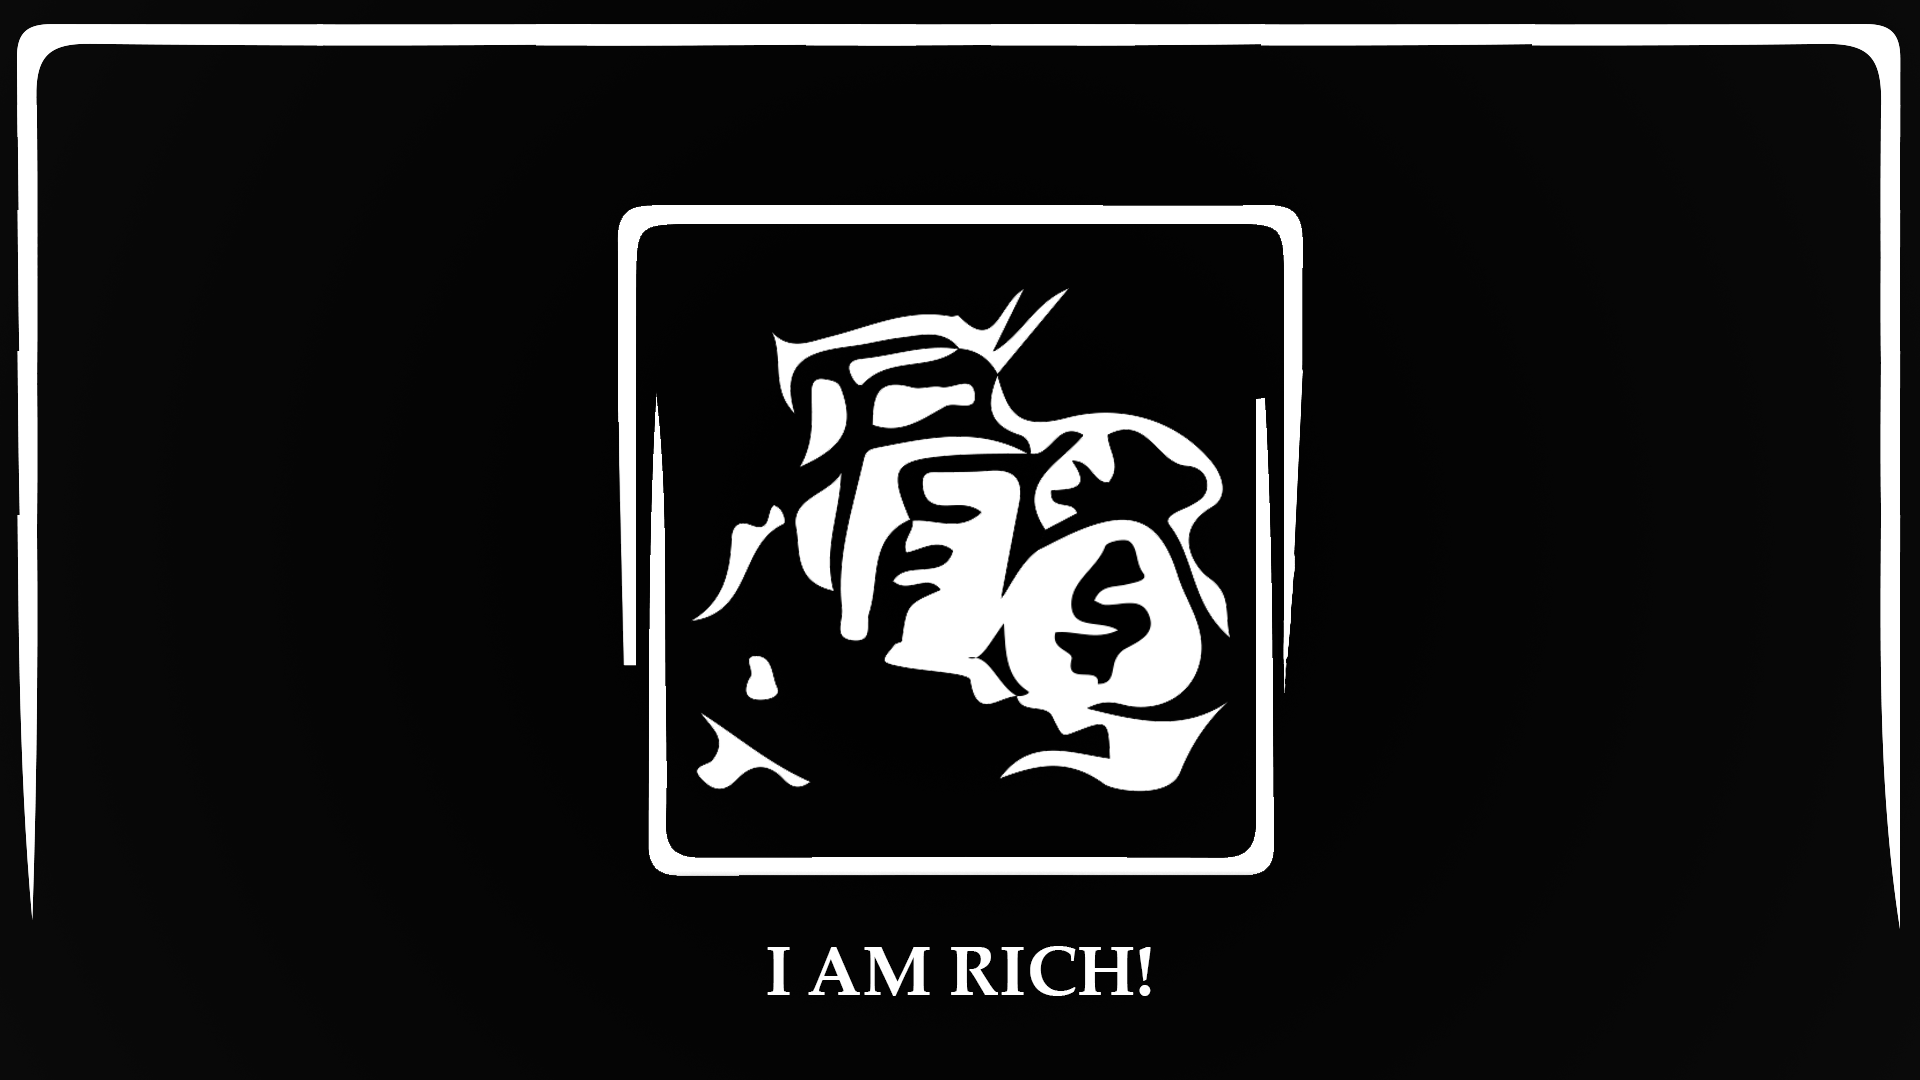 I AM RICH!